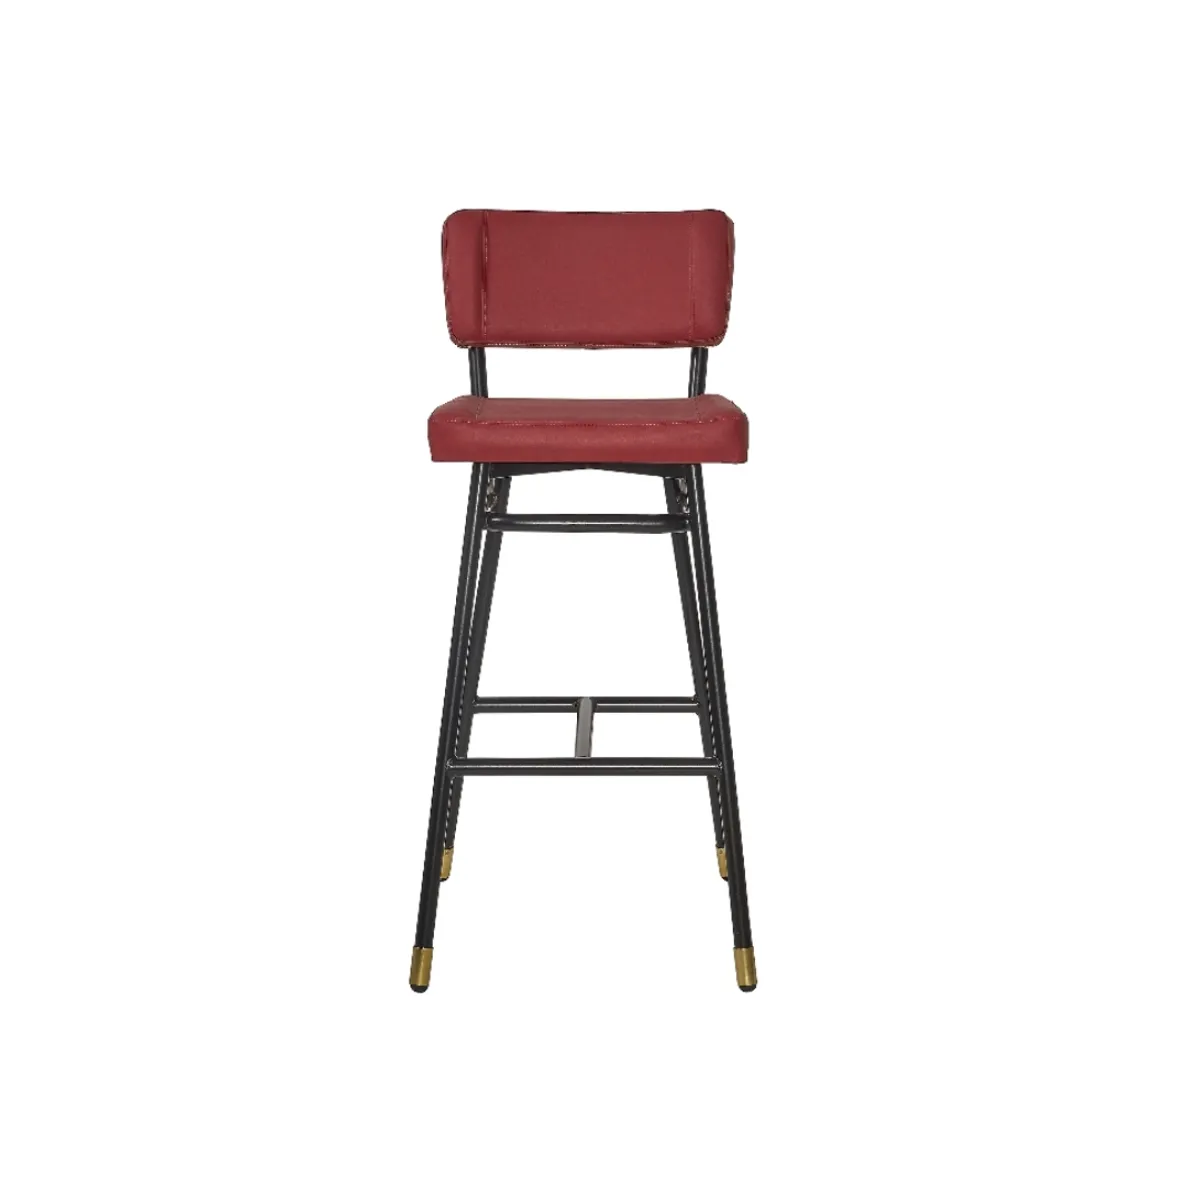 Leana bar stool 1